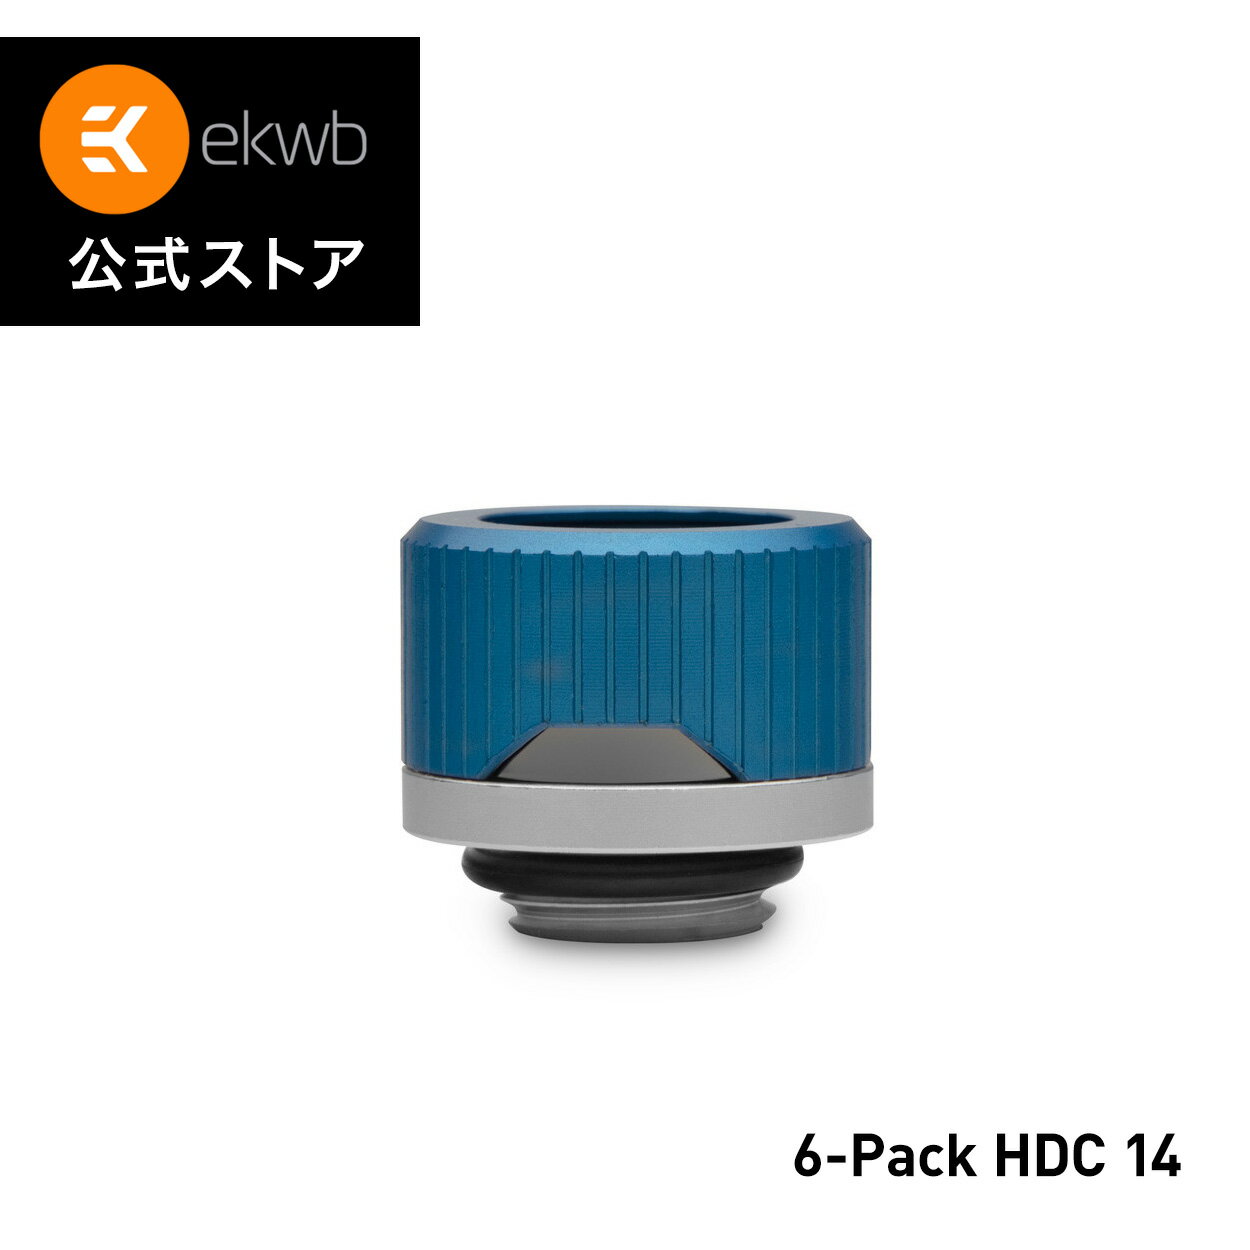 EK-Quantum Torque 6-Pack HDC 14 - Blue Special Editionは、Special Edition Blue EK-Quantum Torque HDCフィッティングが6個入ったフィッティング・マルチパックです。これらはEKのプレミアム14mmハードチューブコンプレッションフィッティングで、アクリルやPETGなどのソリッドチューブで使用するために設計されています。青色のコンプレッションリングとニッケルメッキのカラーリングが付属しており、ユーザーが希望すれば他の色に変更することができます。色違いのカラーリングは別売りです。フィッティングバーブはサテンチタン仕上げです。また、ブランドロゴは一切入っていません。輸送中に破損しないように、黒い発泡スチロールのクッションで箱に梱包されています。 ロックリングは、リングの下にあるゴム製ガスケットを圧縮することによって、ソリッドチューブがフィッティングから引き抜かれるのを防ぎます。外側には溝があり、手で簡単に締め付けることができます。コンプレッションリングには、EK-Quantumの特徴的な形状の切り欠きがあり、カラーエステリングを表示することができます。カラーリングは多くの色から選べ、コンプレッションロックリングの前にフィッティングにねじ込みます。カラーリングは別売りです。 フィッティングのバーブとコンプレッションリングは共にCNC加工された真鍮製で、シールは高品質のゴム製Oリングでできています。 ベースフィッティングの表面は滑らかで十分なグリップ面はありませんが、バーブの内側には9mmの六角レンチパターンでソケット加工が施されています。六角レンチ9mm（別売）を使用すると、指先を傷つけずにフィッティングを装着することができます。六角レンチ9mmを使用してフィッティングバーブを取り付ける際は、他の液冷製品を破損させないよう、無理な力を加えないようご注意ください。EK-Loopマルチ六角レンチ（6mm、8mm、9mm）を使用することをお勧めします。この六角レンチは、無理な力を加えると折れるようにできており、高価な部品の破損を防ぐことができます。 これらのフィッティングは、他のすべてのEKウォーターブロック液冷製品と互換性があることが保証されています。 技術データ - 仕上げ：ブルーコンプレッションリング、ニッケルメッキカラーリング、サテンチタン製フィッティングバーブ -ネジ山：G1/4インチBSP、オスネジ長さ4.5mm - 対応チューブ 外径：14mm - フィッティングの外径：22mm - 取り付け高さ：15mm - 対応するソリッドチューブ アクリル、PETG、銅、真鍮、ステンレススチール ヨーロッパ　スロベニア製 ［！］ご注意ください。 &bull; ニッケルめっきの継手へのダメージを防ぐため、腐食防止剤、スケール防止剤、生物学的防止剤を含む特別に設計されたEK純正クーラントを使用してください。 &bull; ソリッドチューブを取り付ける前に、ガスケット（Oリング）を水滴で濡らしてください。 &bull; ソリッドチューブを挿入する際は、無理な力を加えないでください &bull; 六角レンチ9mmでフィッティングバーブを取り付ける際、無理な力を加えないでください。 &bull; ガスケット（Oリング）の損傷を防ぐため、切断したばかりのソリッドチューブの端に面取りをすることが必須です。0.5mm×45&#176;の面取りを推奨します。 &bull; 本製品はアルミ製のフルードゲーミングパーツと一緒に取り付けないでください。 &bull; 別色のカラーリングは別売りです。 追加情報 材質/デザイン/カラー オプション：ブルー ネジ山：G1/4インチ